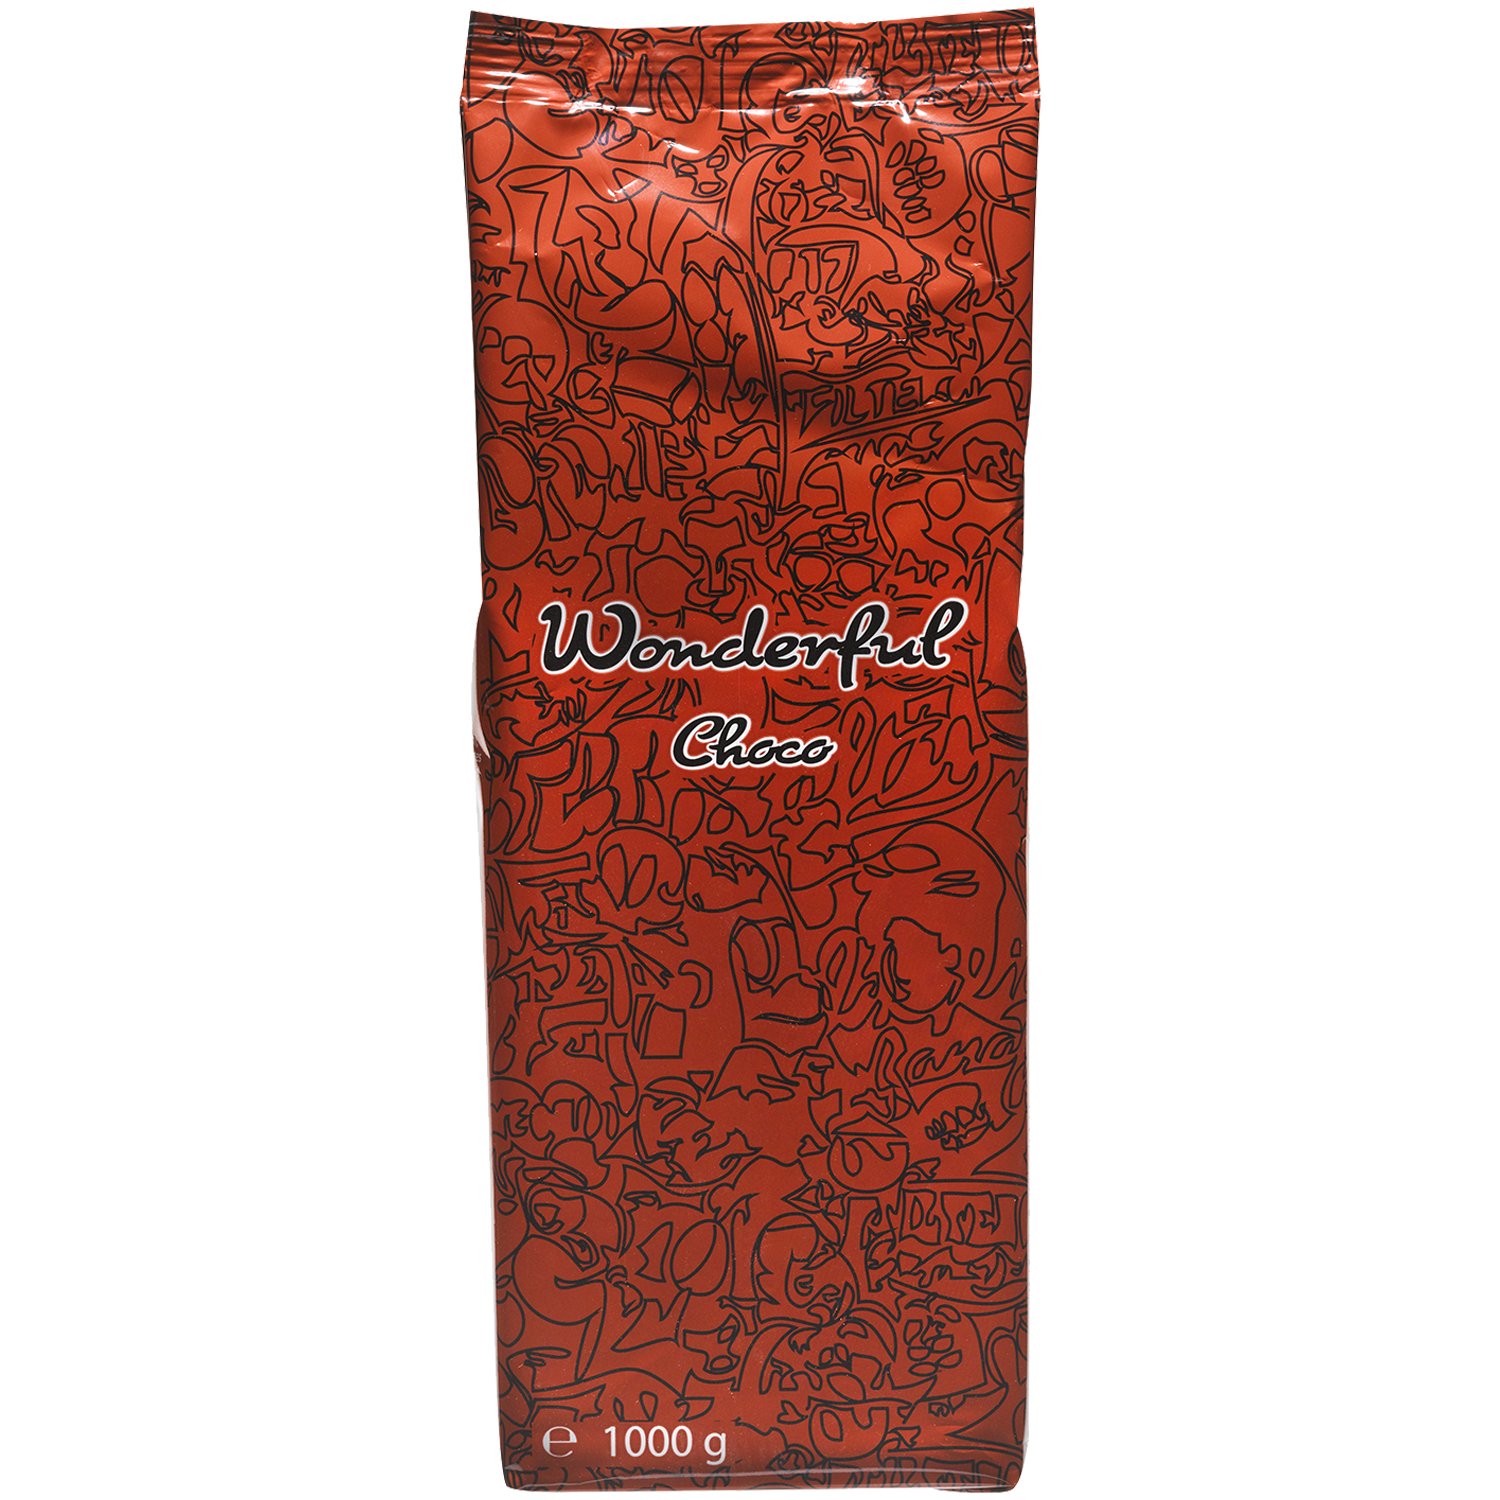 Wonderful Choco Red kakaopulver